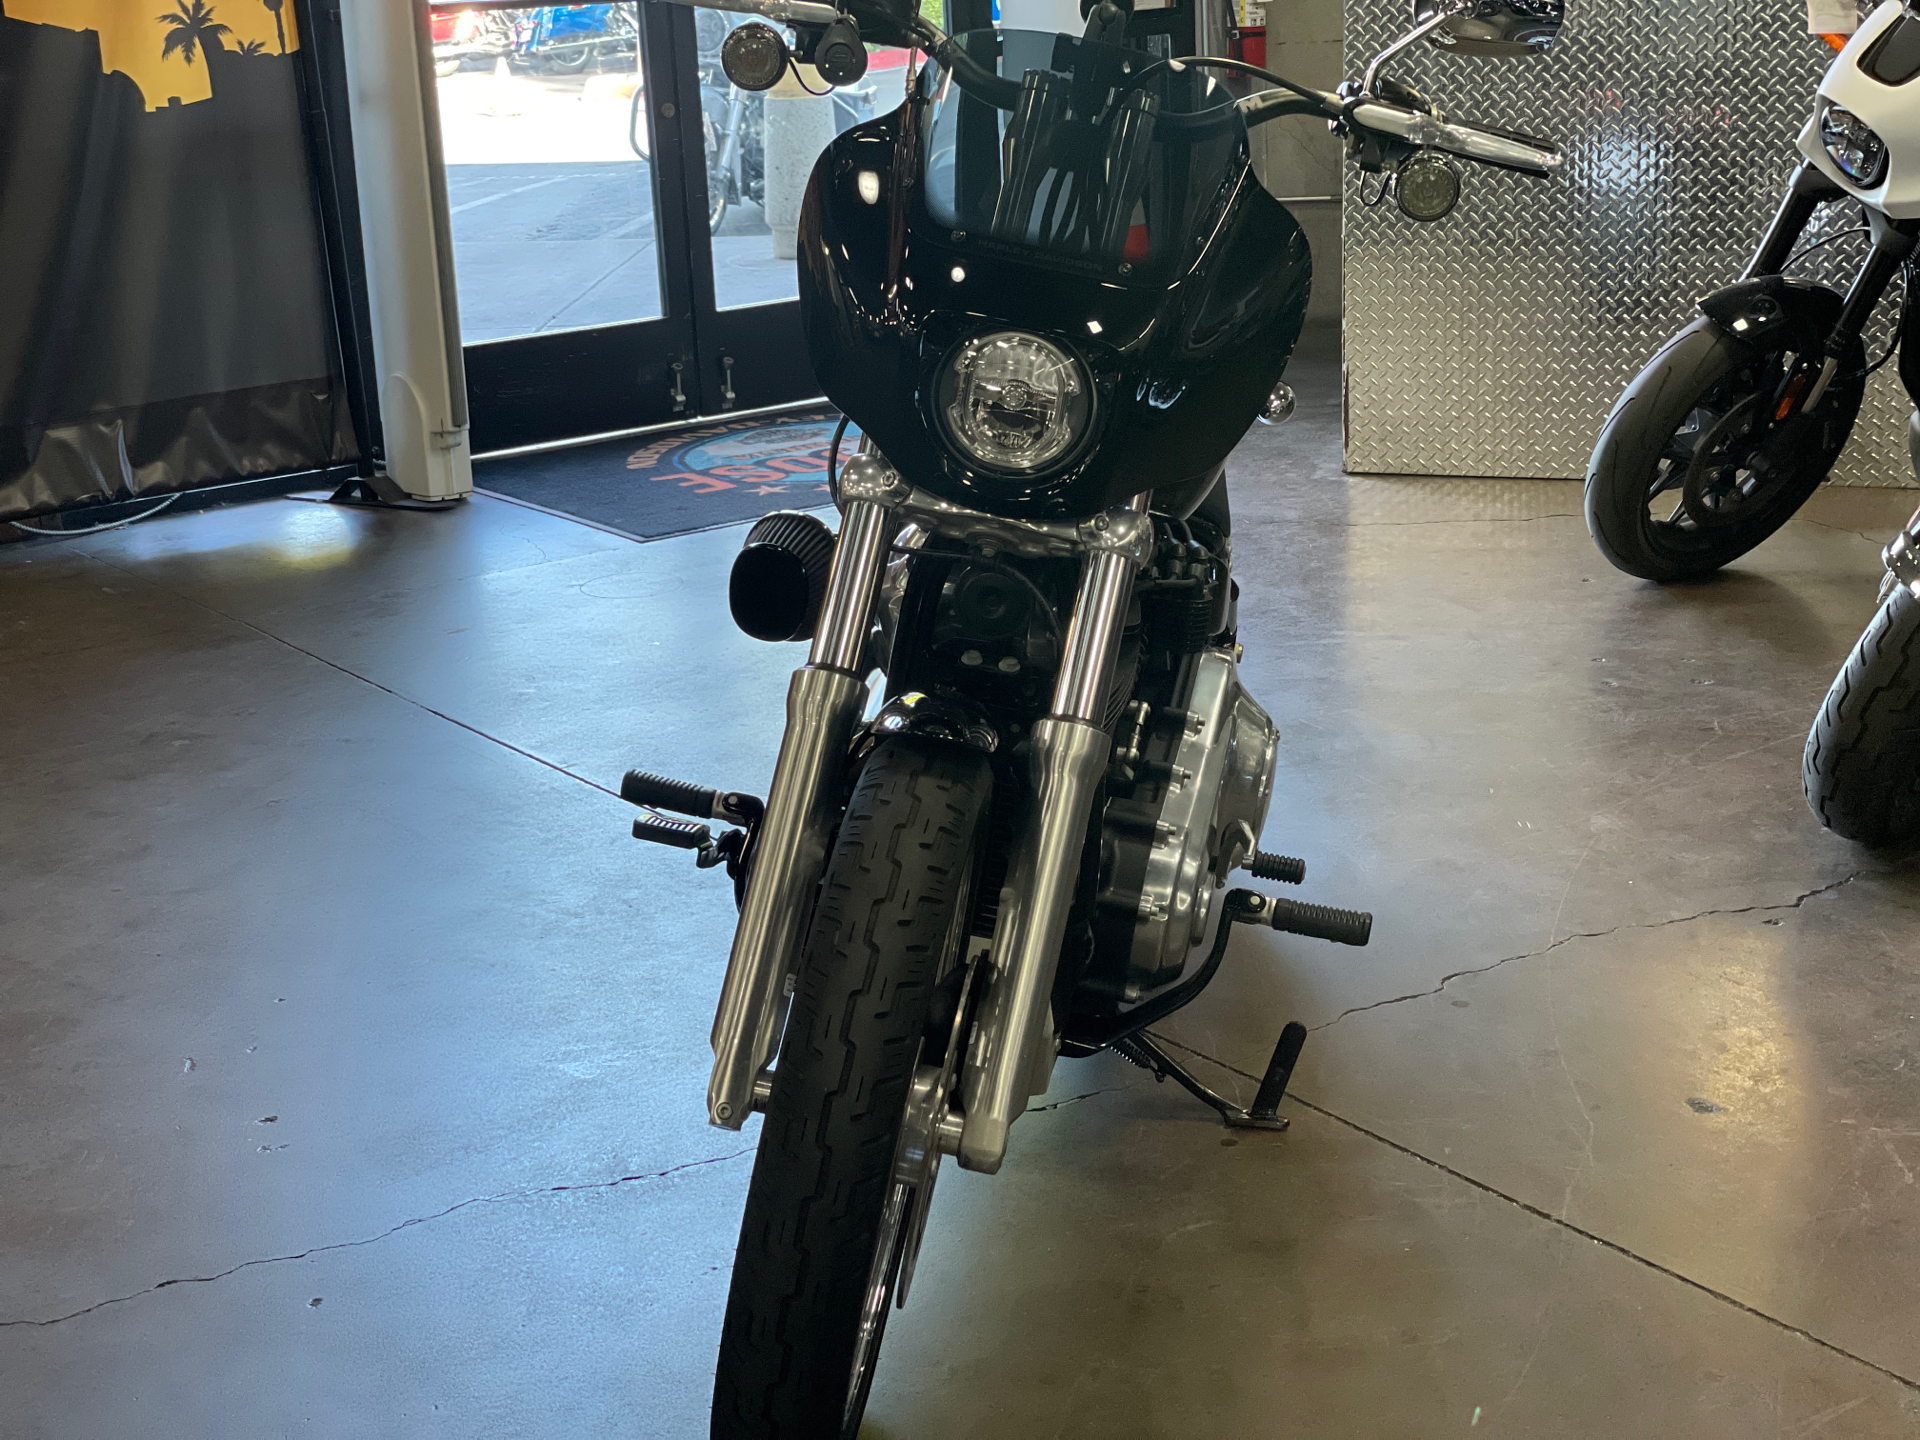 2020 Harley-Davidson Softail® Standard in San Jose, California - Photo 12